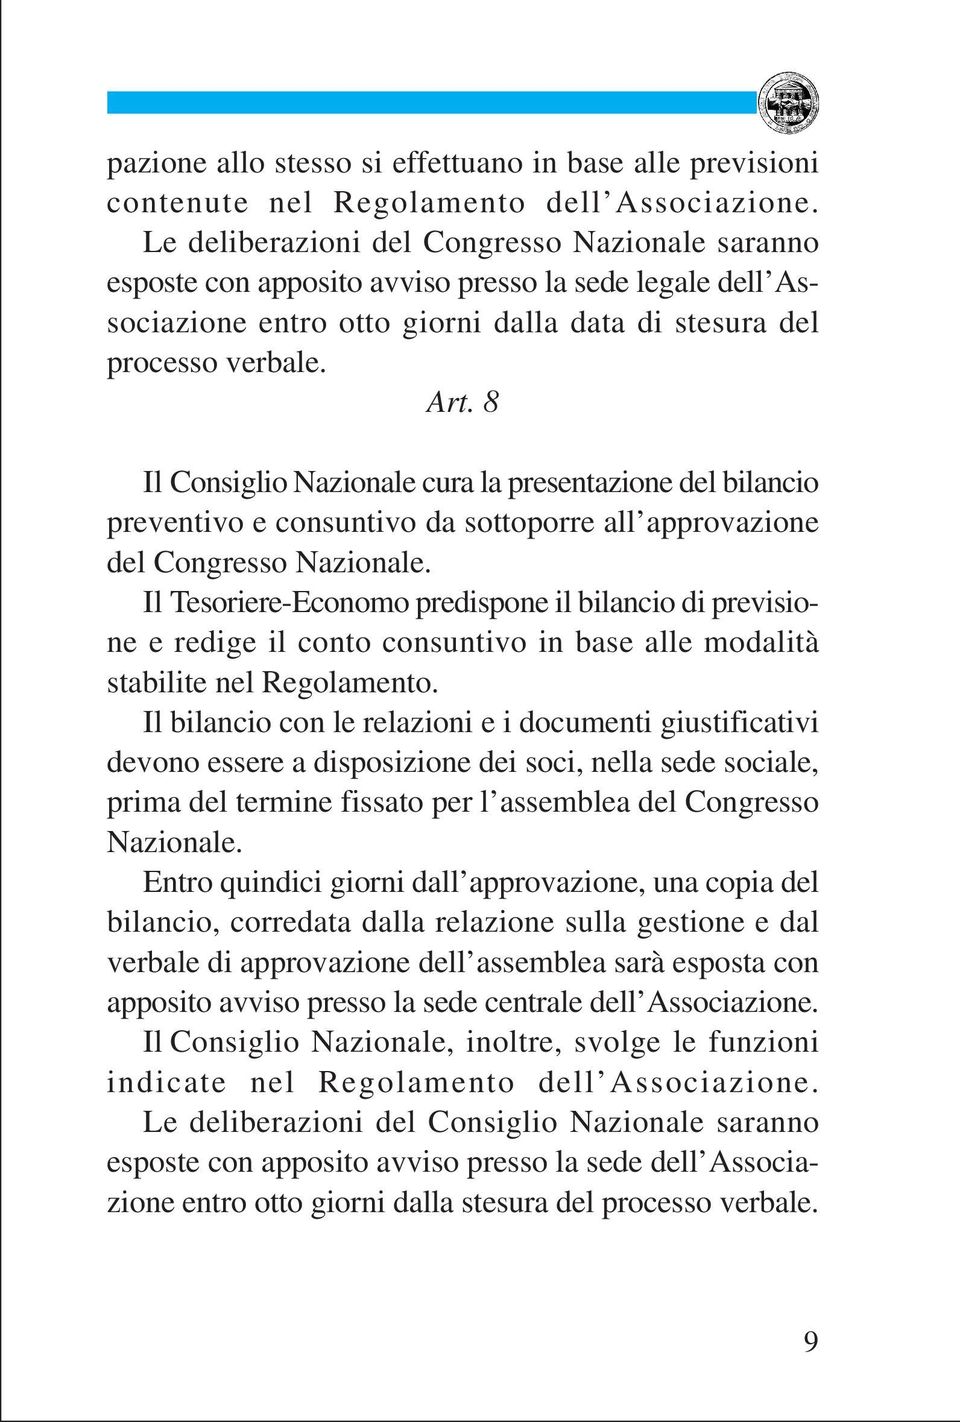 8 Il Consiglio Nazionale cura la presentazione del bilancio preventivo e consuntivo da sottoporre all approvazione del Congresso Nazionale.